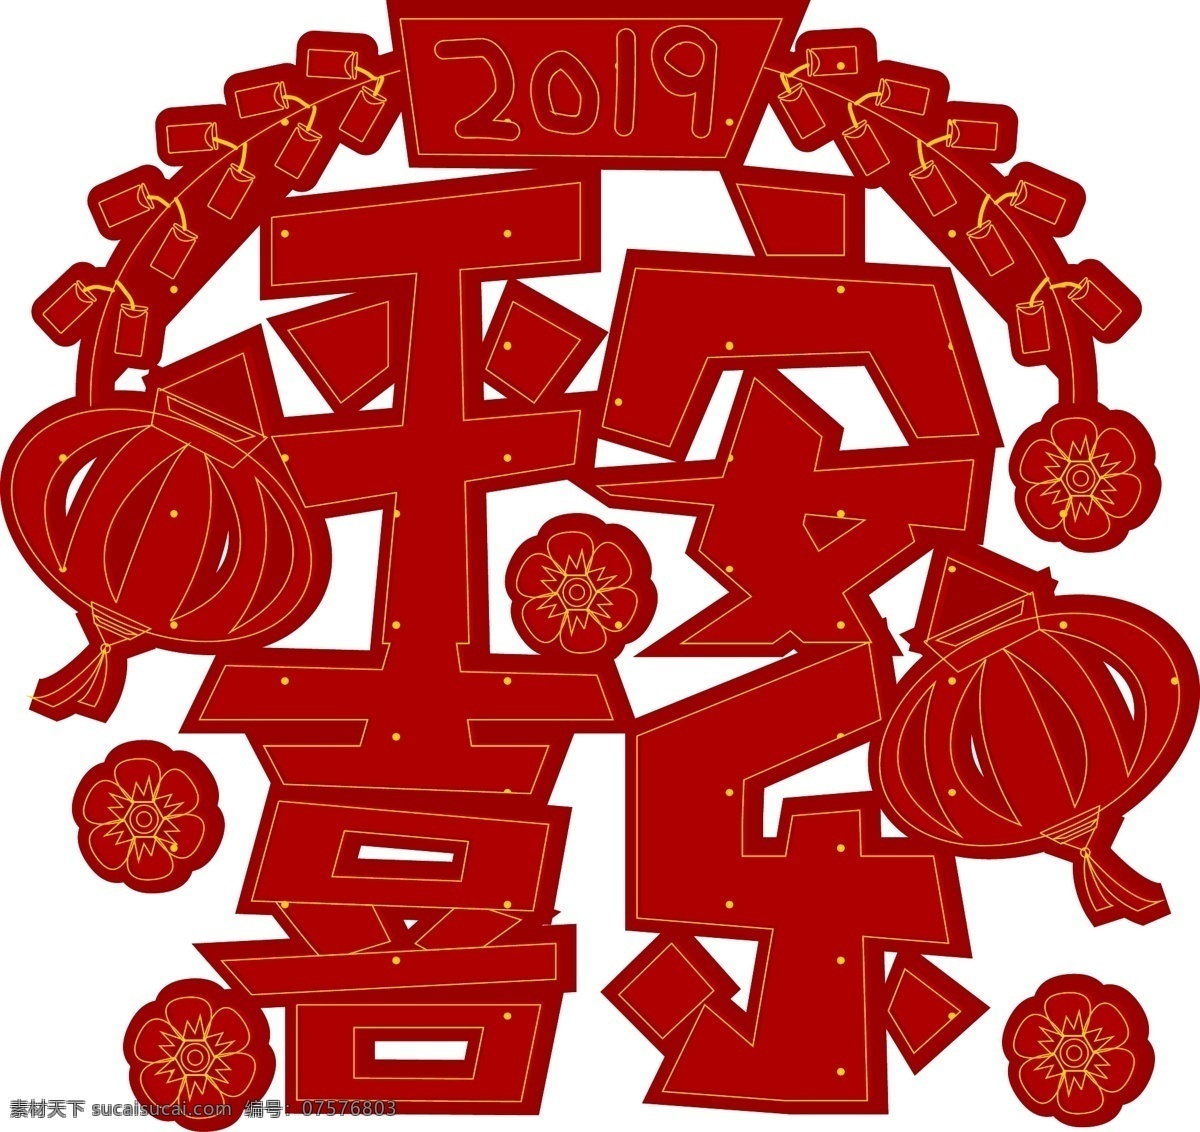 2019 新年 传统 喜庆 红色 平安 喜乐 艺术 字 灯笼 炮竹 平安喜乐